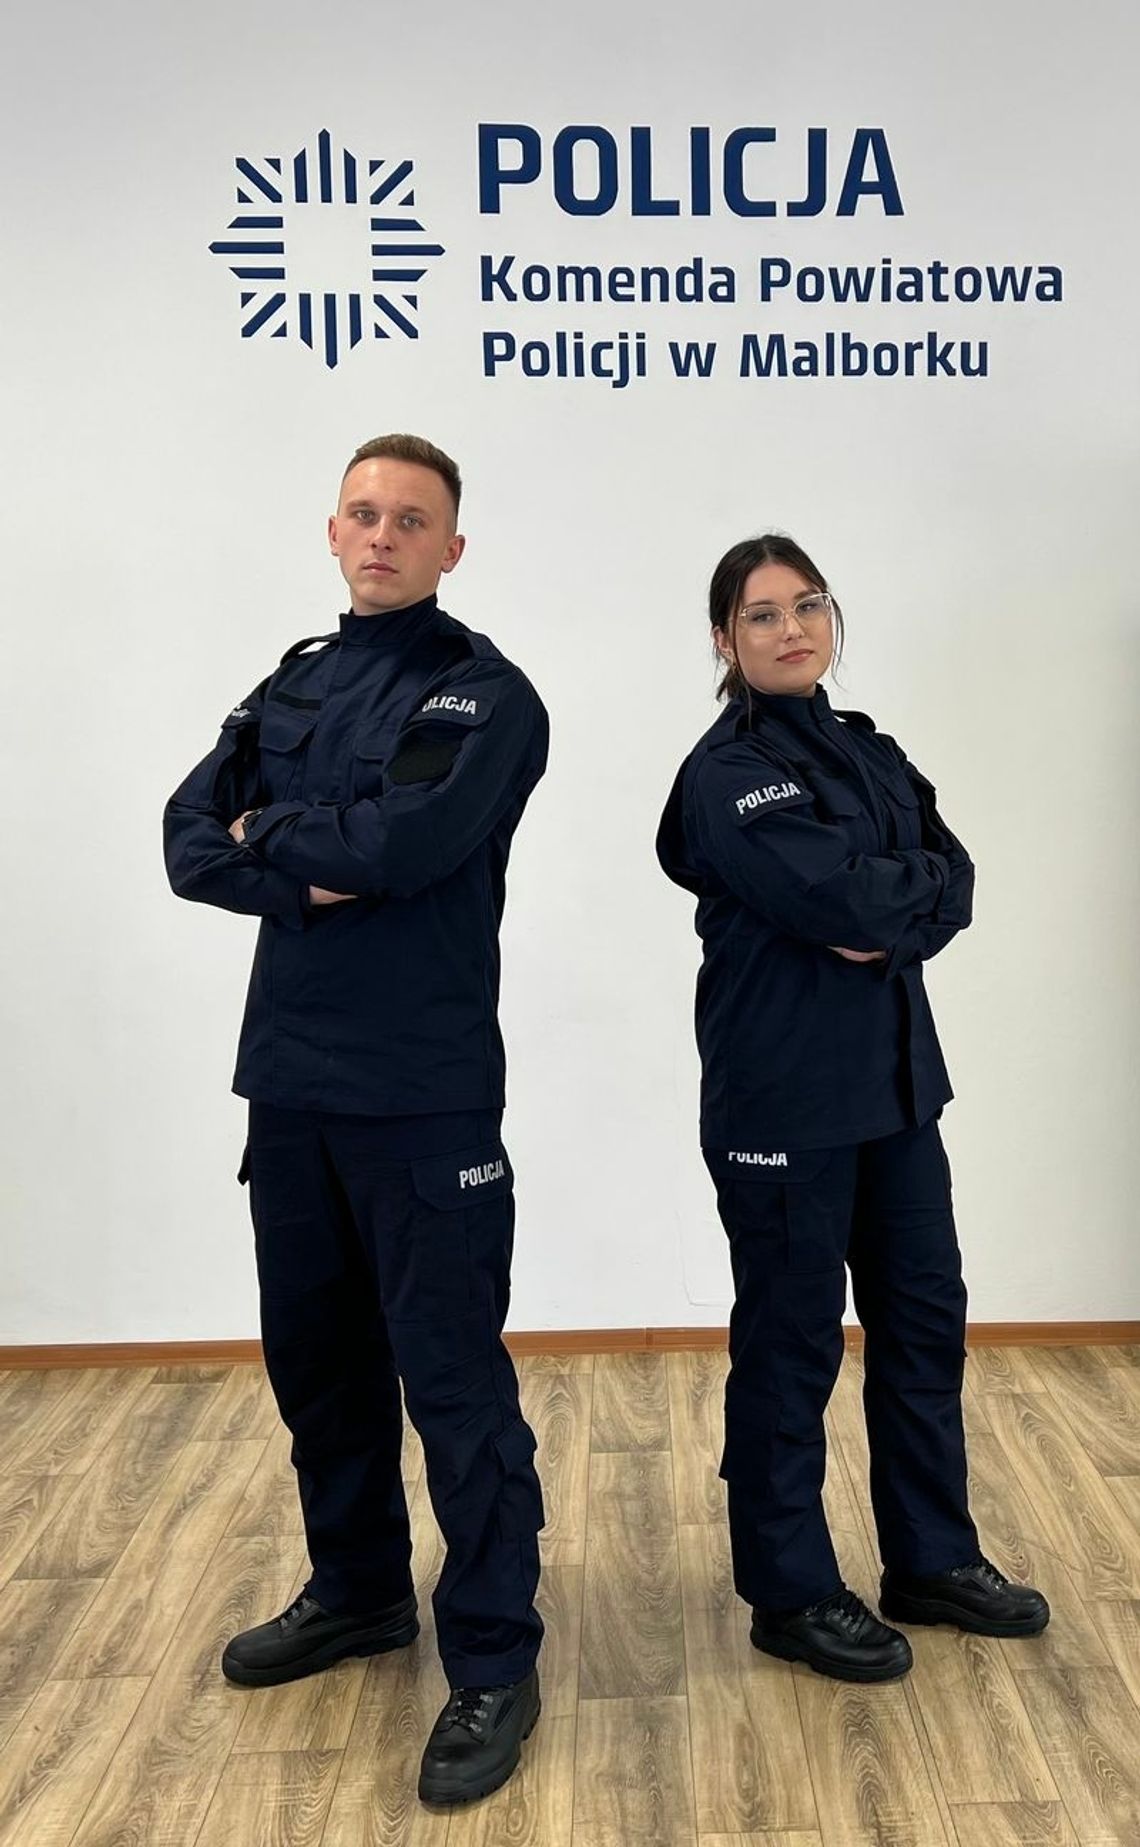 Dwóch nowych policjantów w malborskiej komendzie. I Ty możesz zostać jednym z nas!